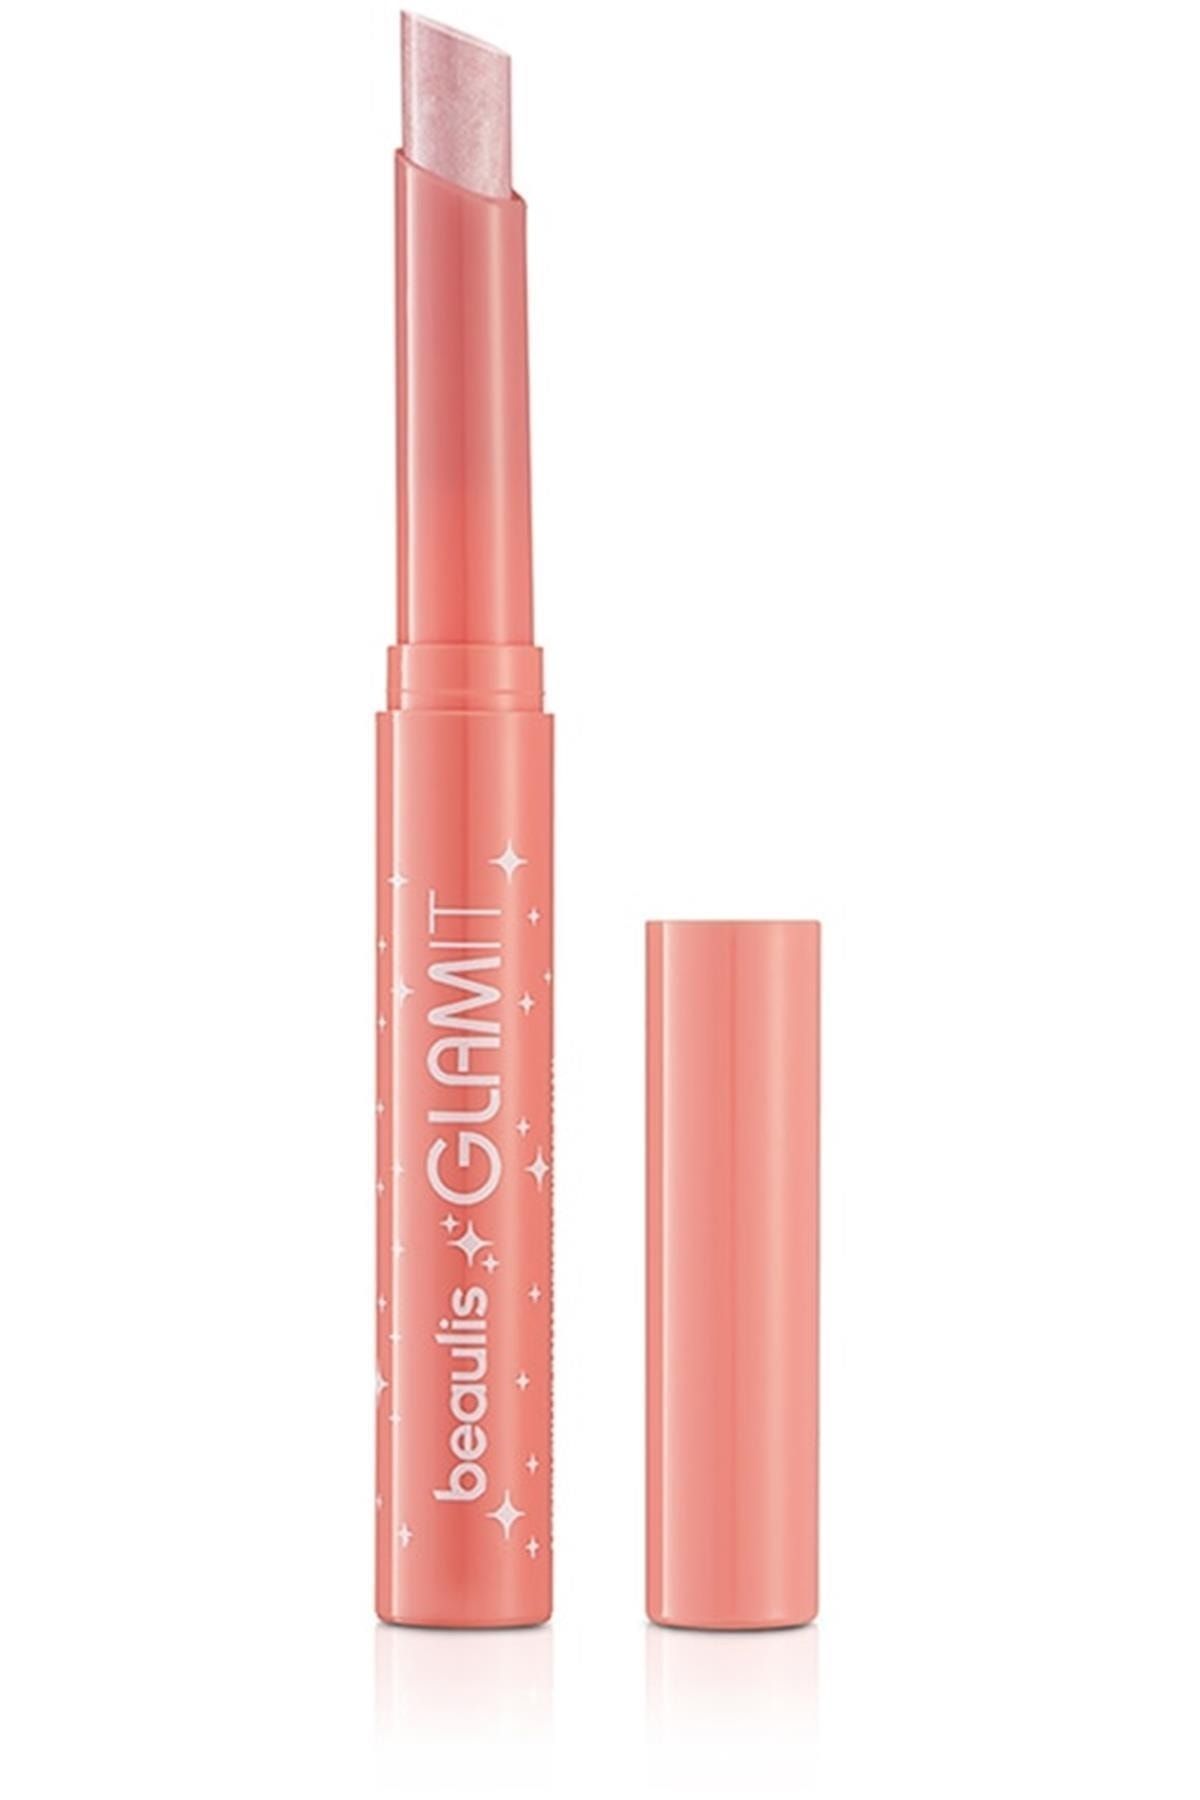 beaulis Glam It Işıltılı Lip Balm Ruj 516 Light Pink Dudak Balmı